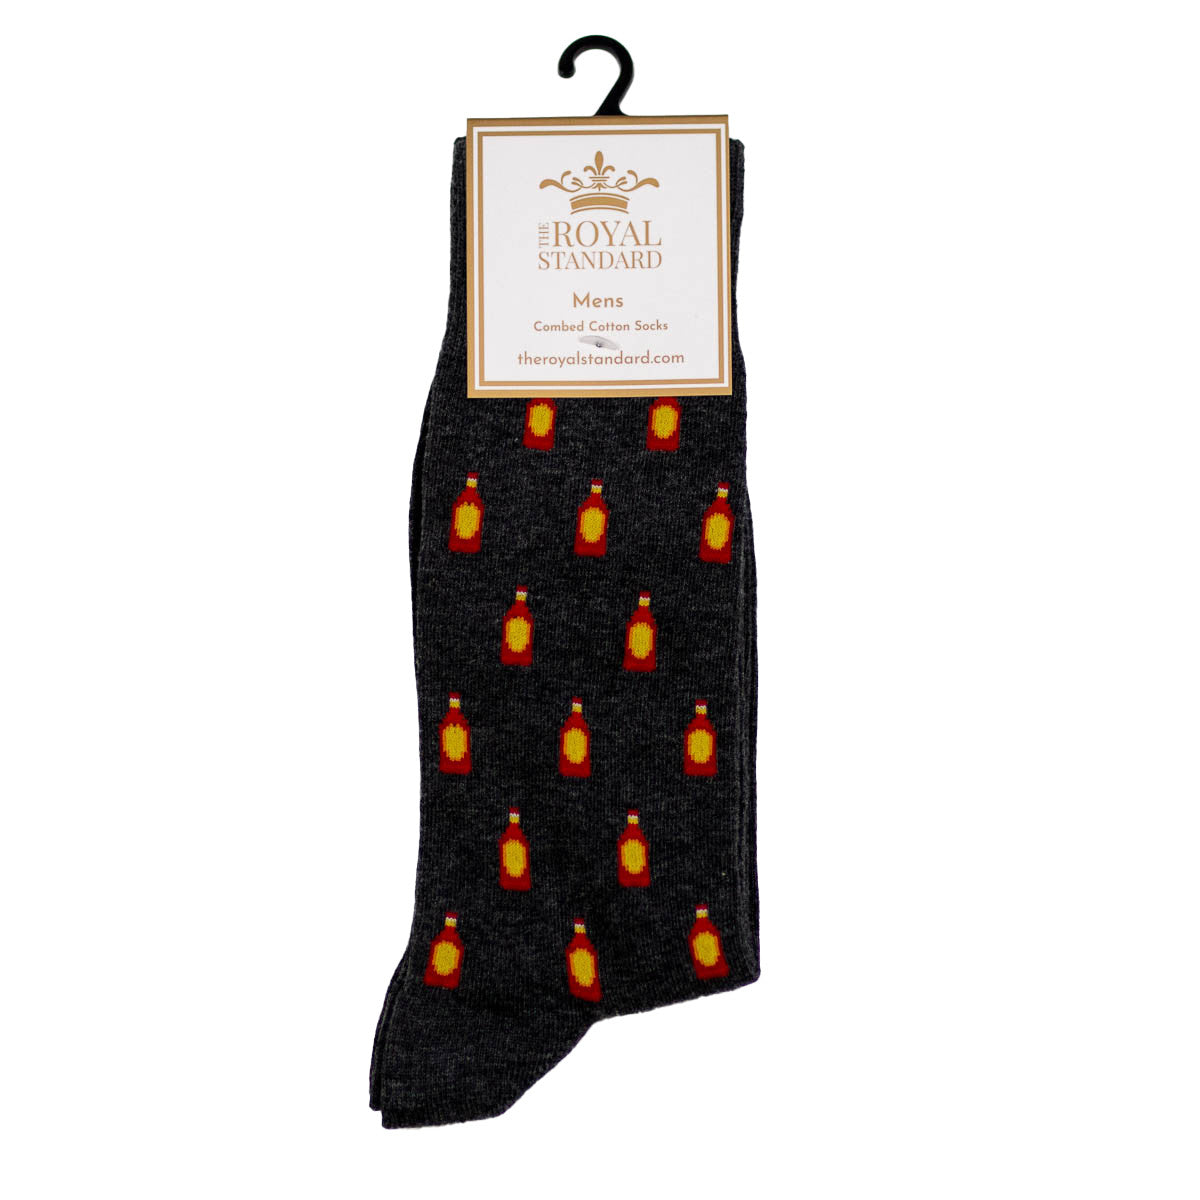 The Royal Standard- Men's Hot Sauce Socks